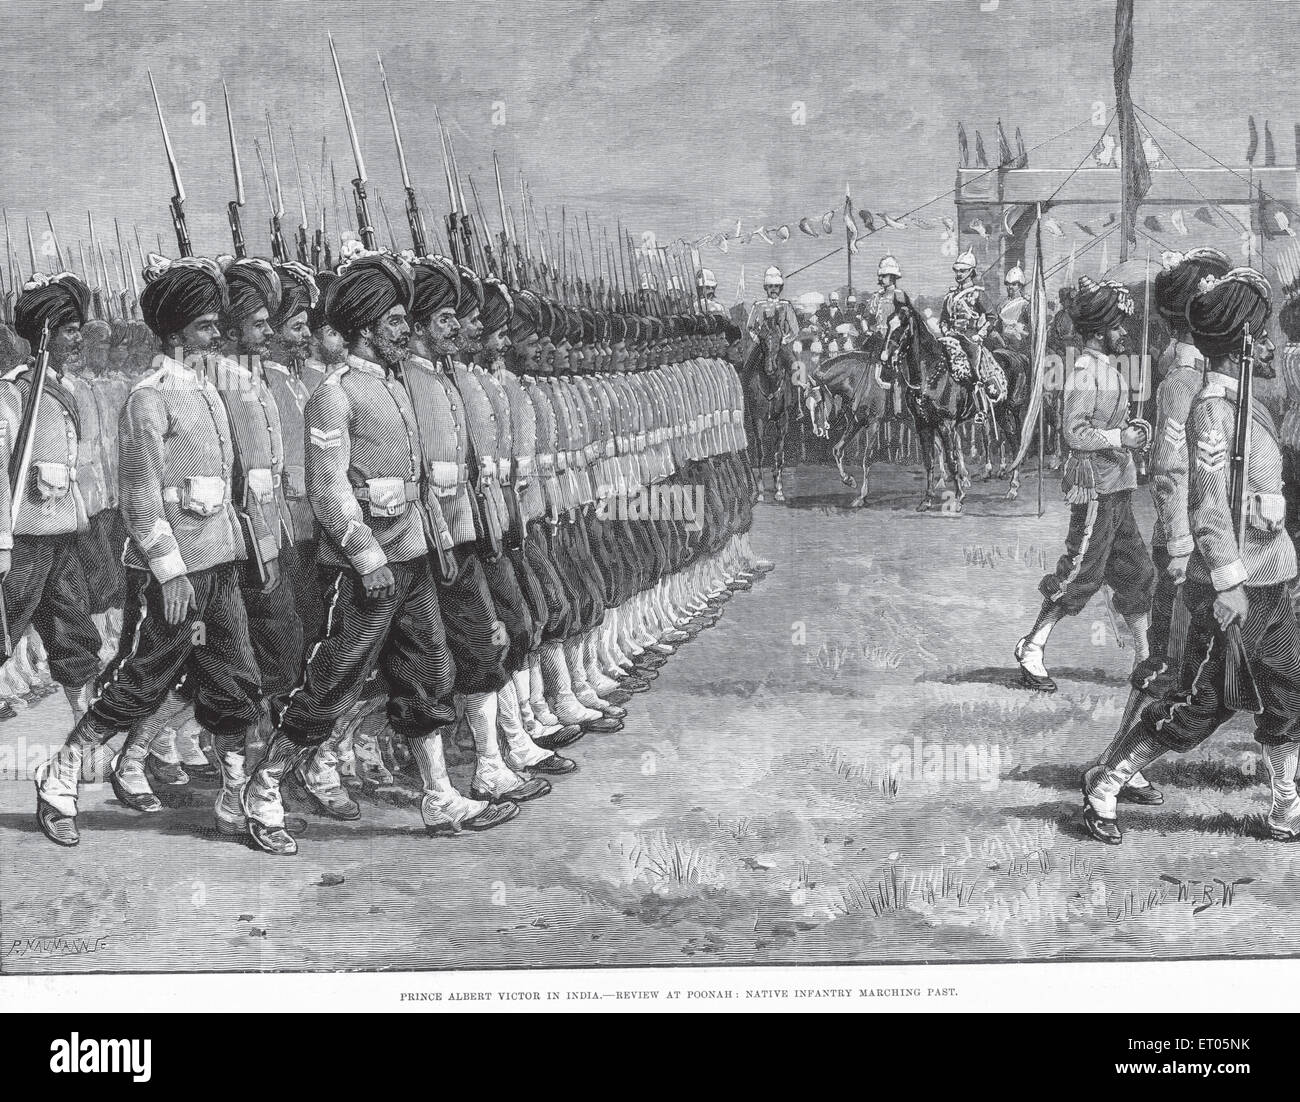 Mutinerie et militaire ; Prince Albert victor en Inde ; examen à Poona Pune ; natif infantry marchant passé ; Maharashtra Inde ; Banque D'Images